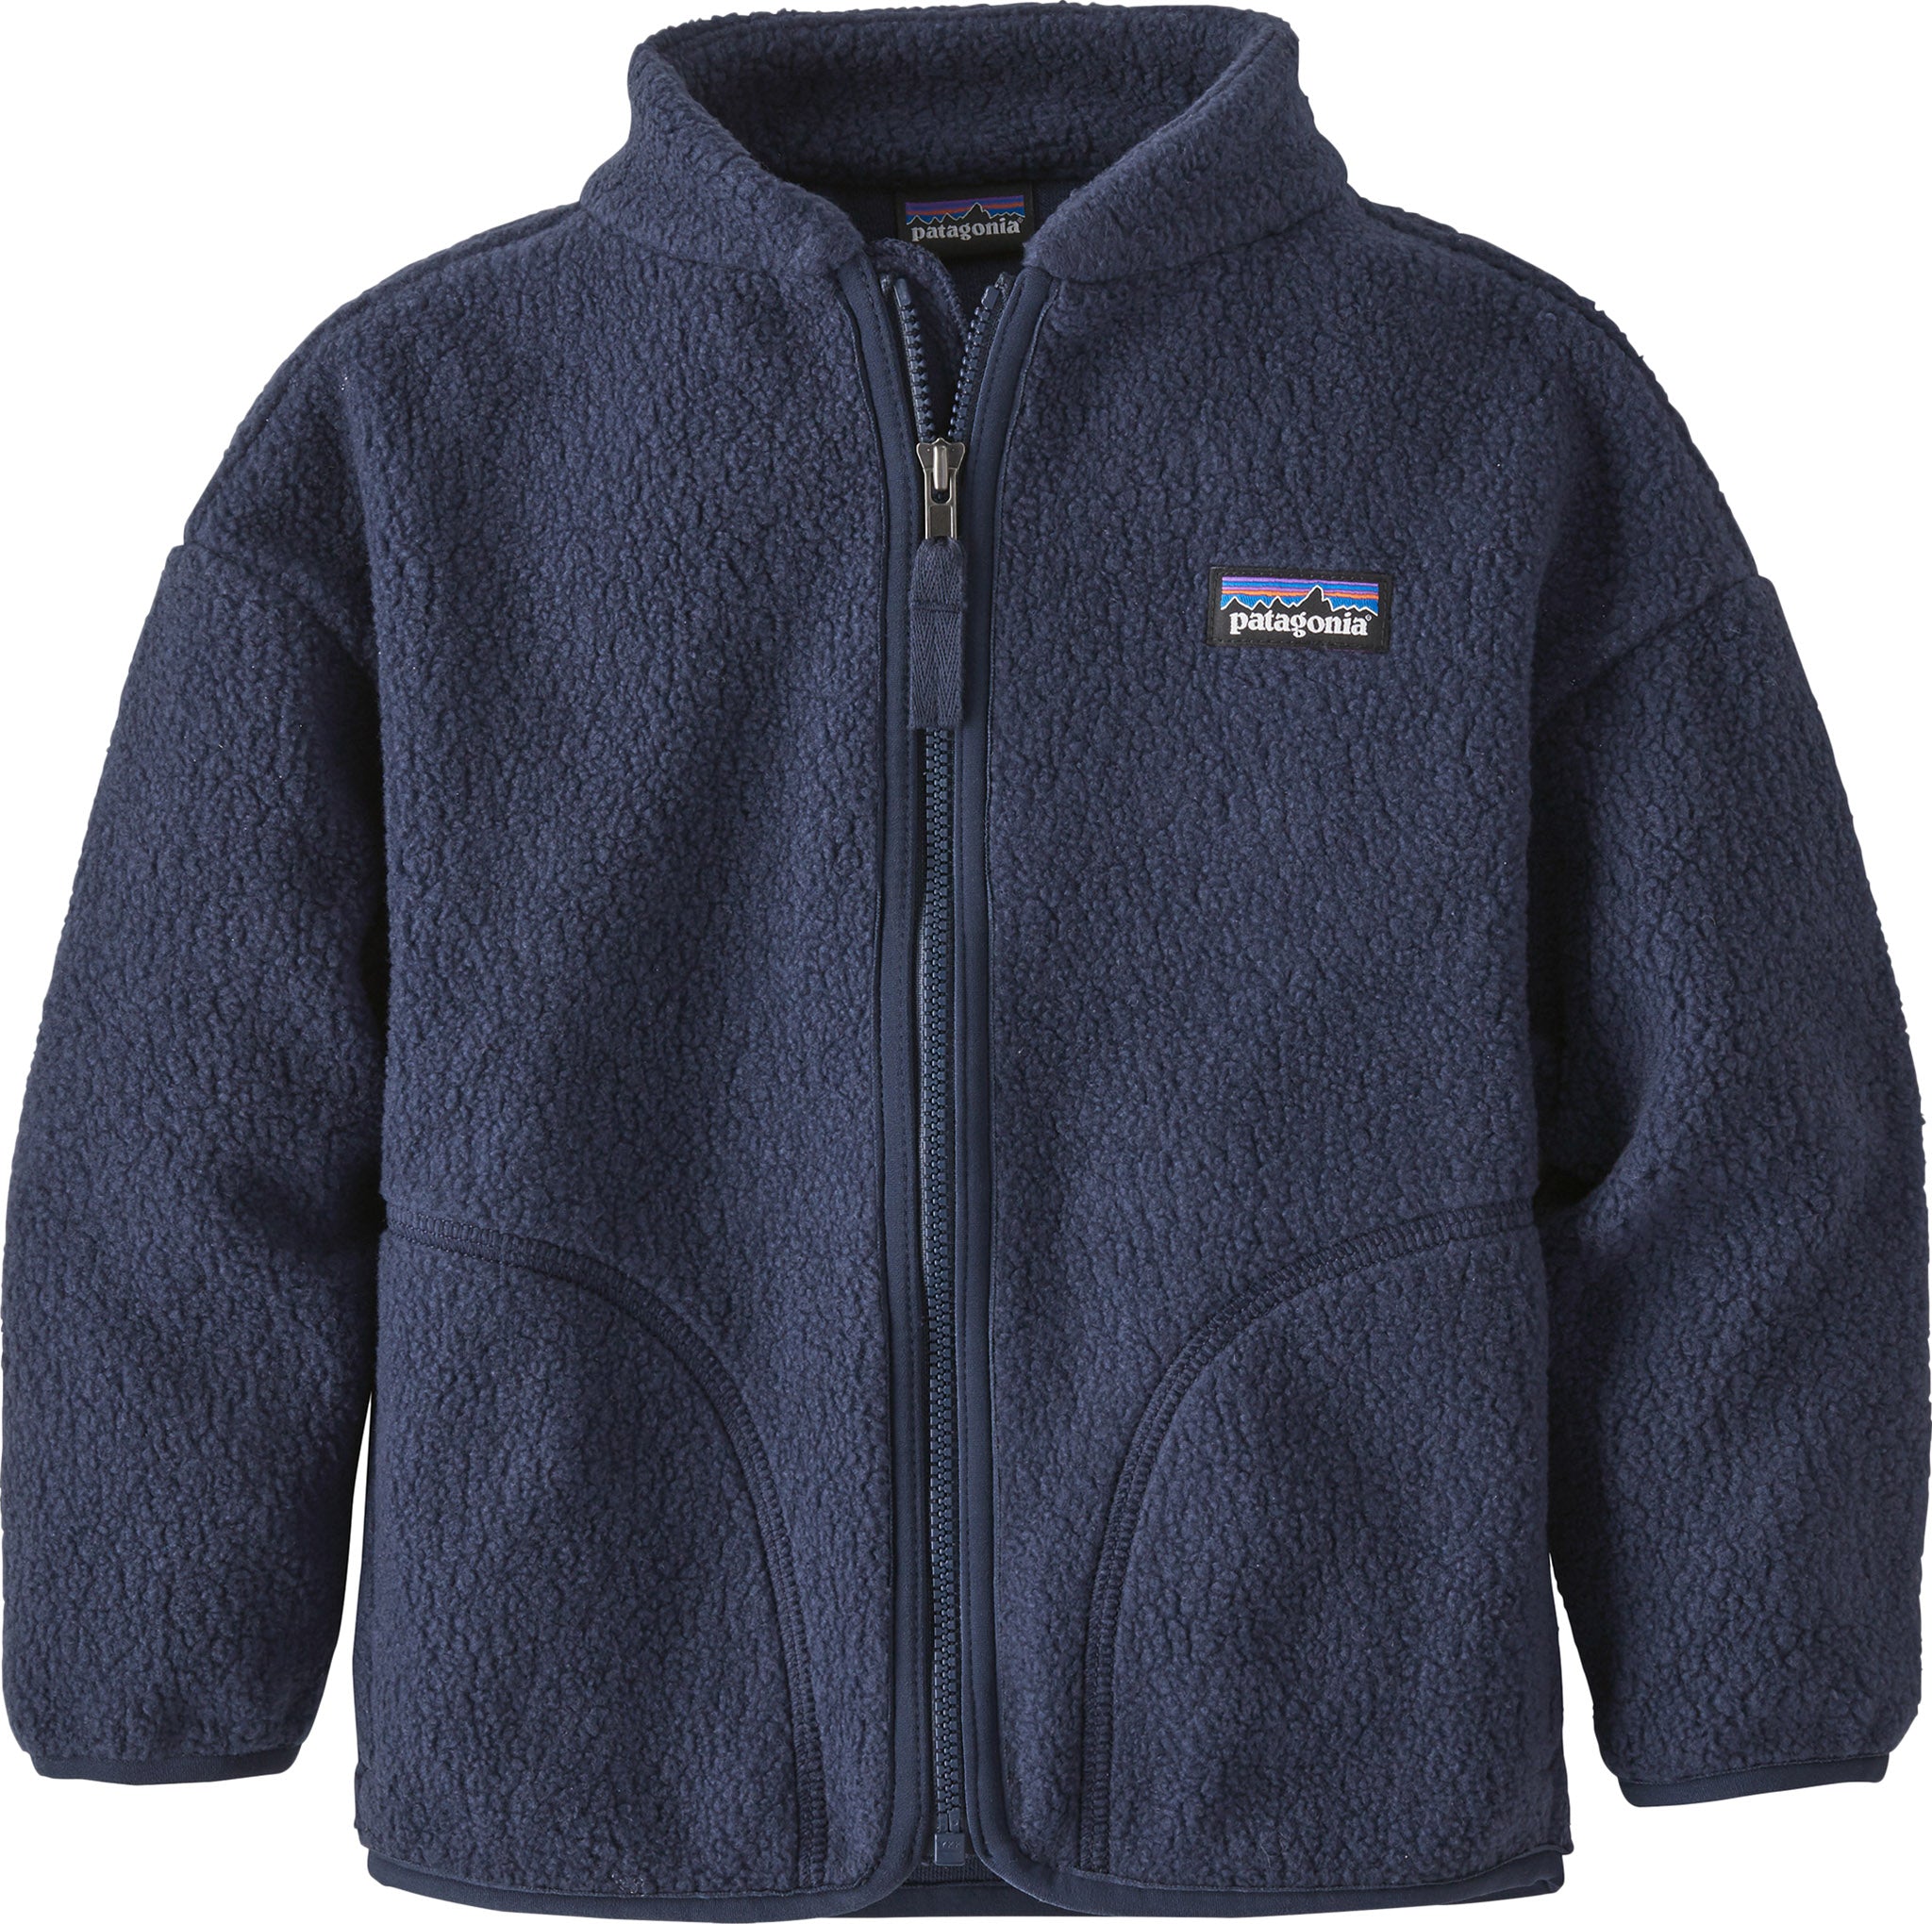 Patagonia Cozy-Toasty Full Zip Fleece Sweatshirt - Baby